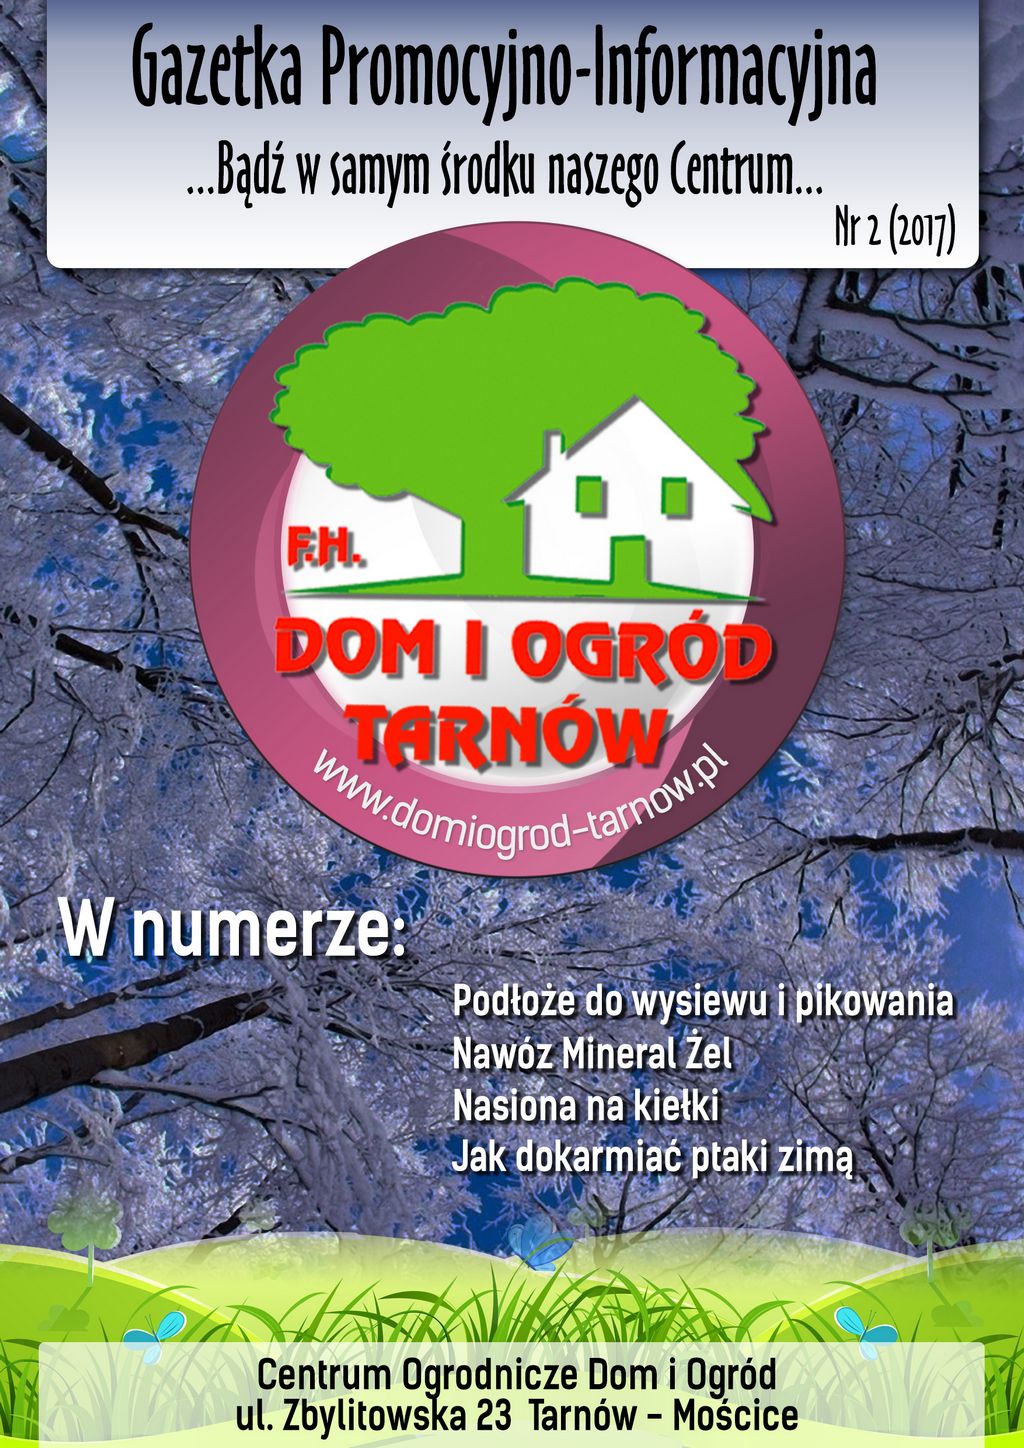 Gazetka Promocyjno-Informacyjna - 2/2017